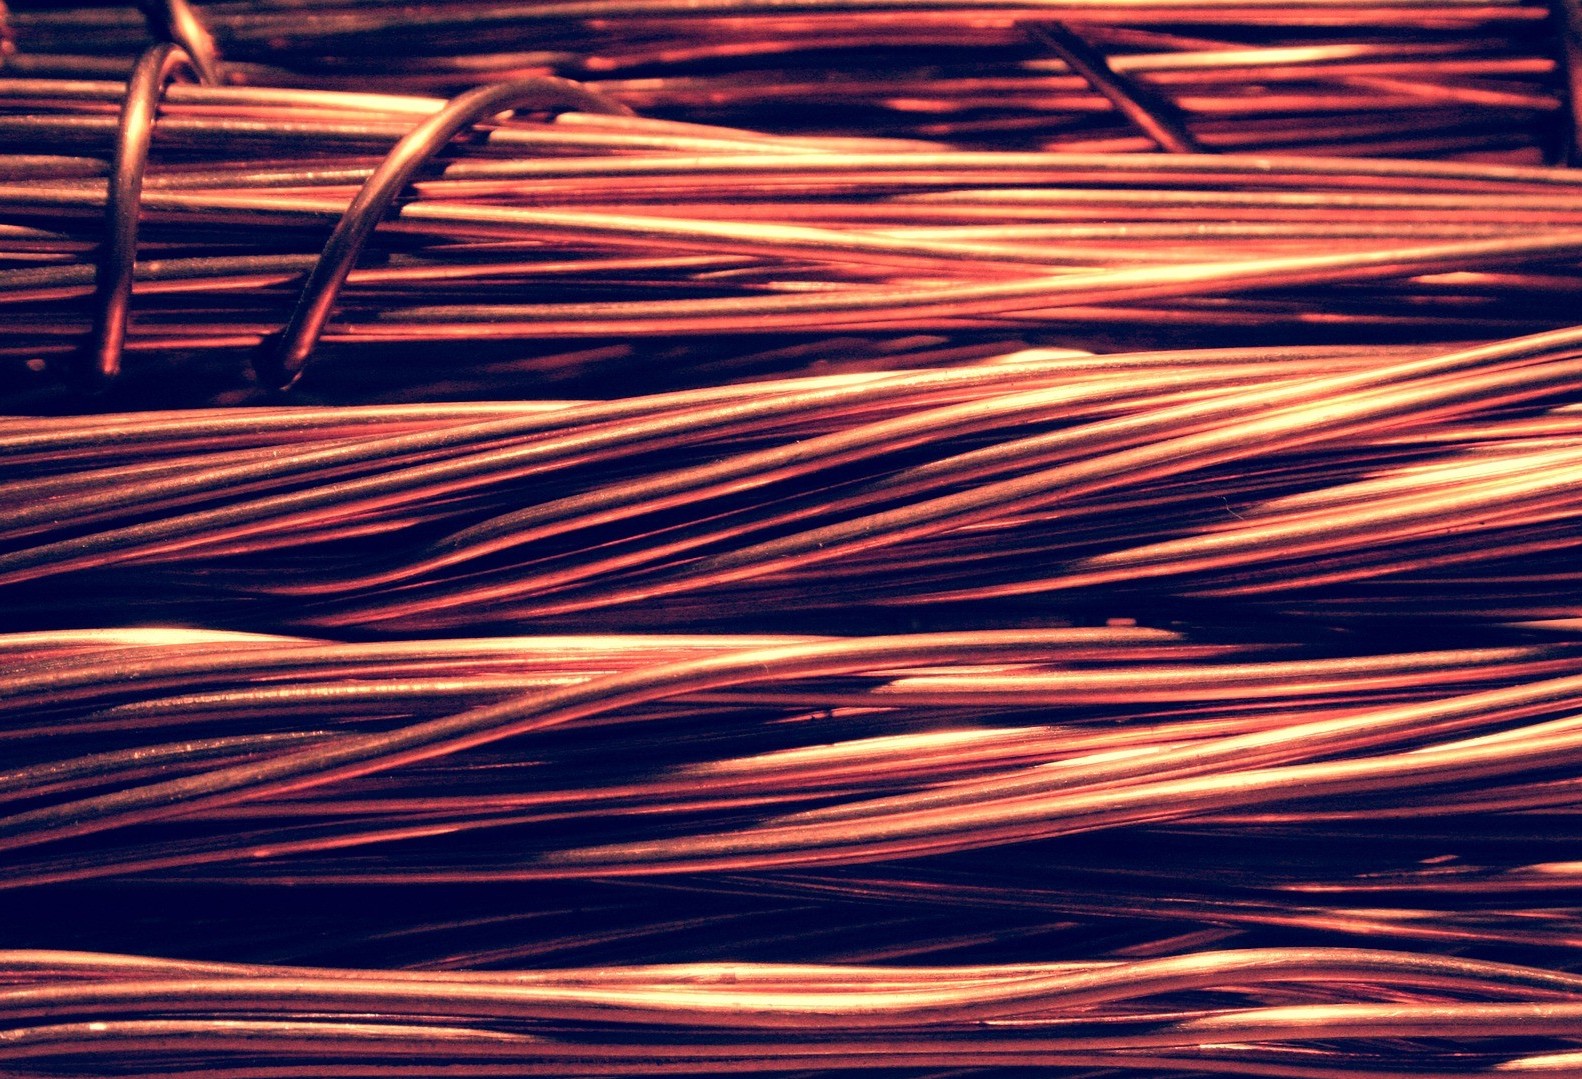 Delegada pede atenção da população a comercialização de fios de cobre 